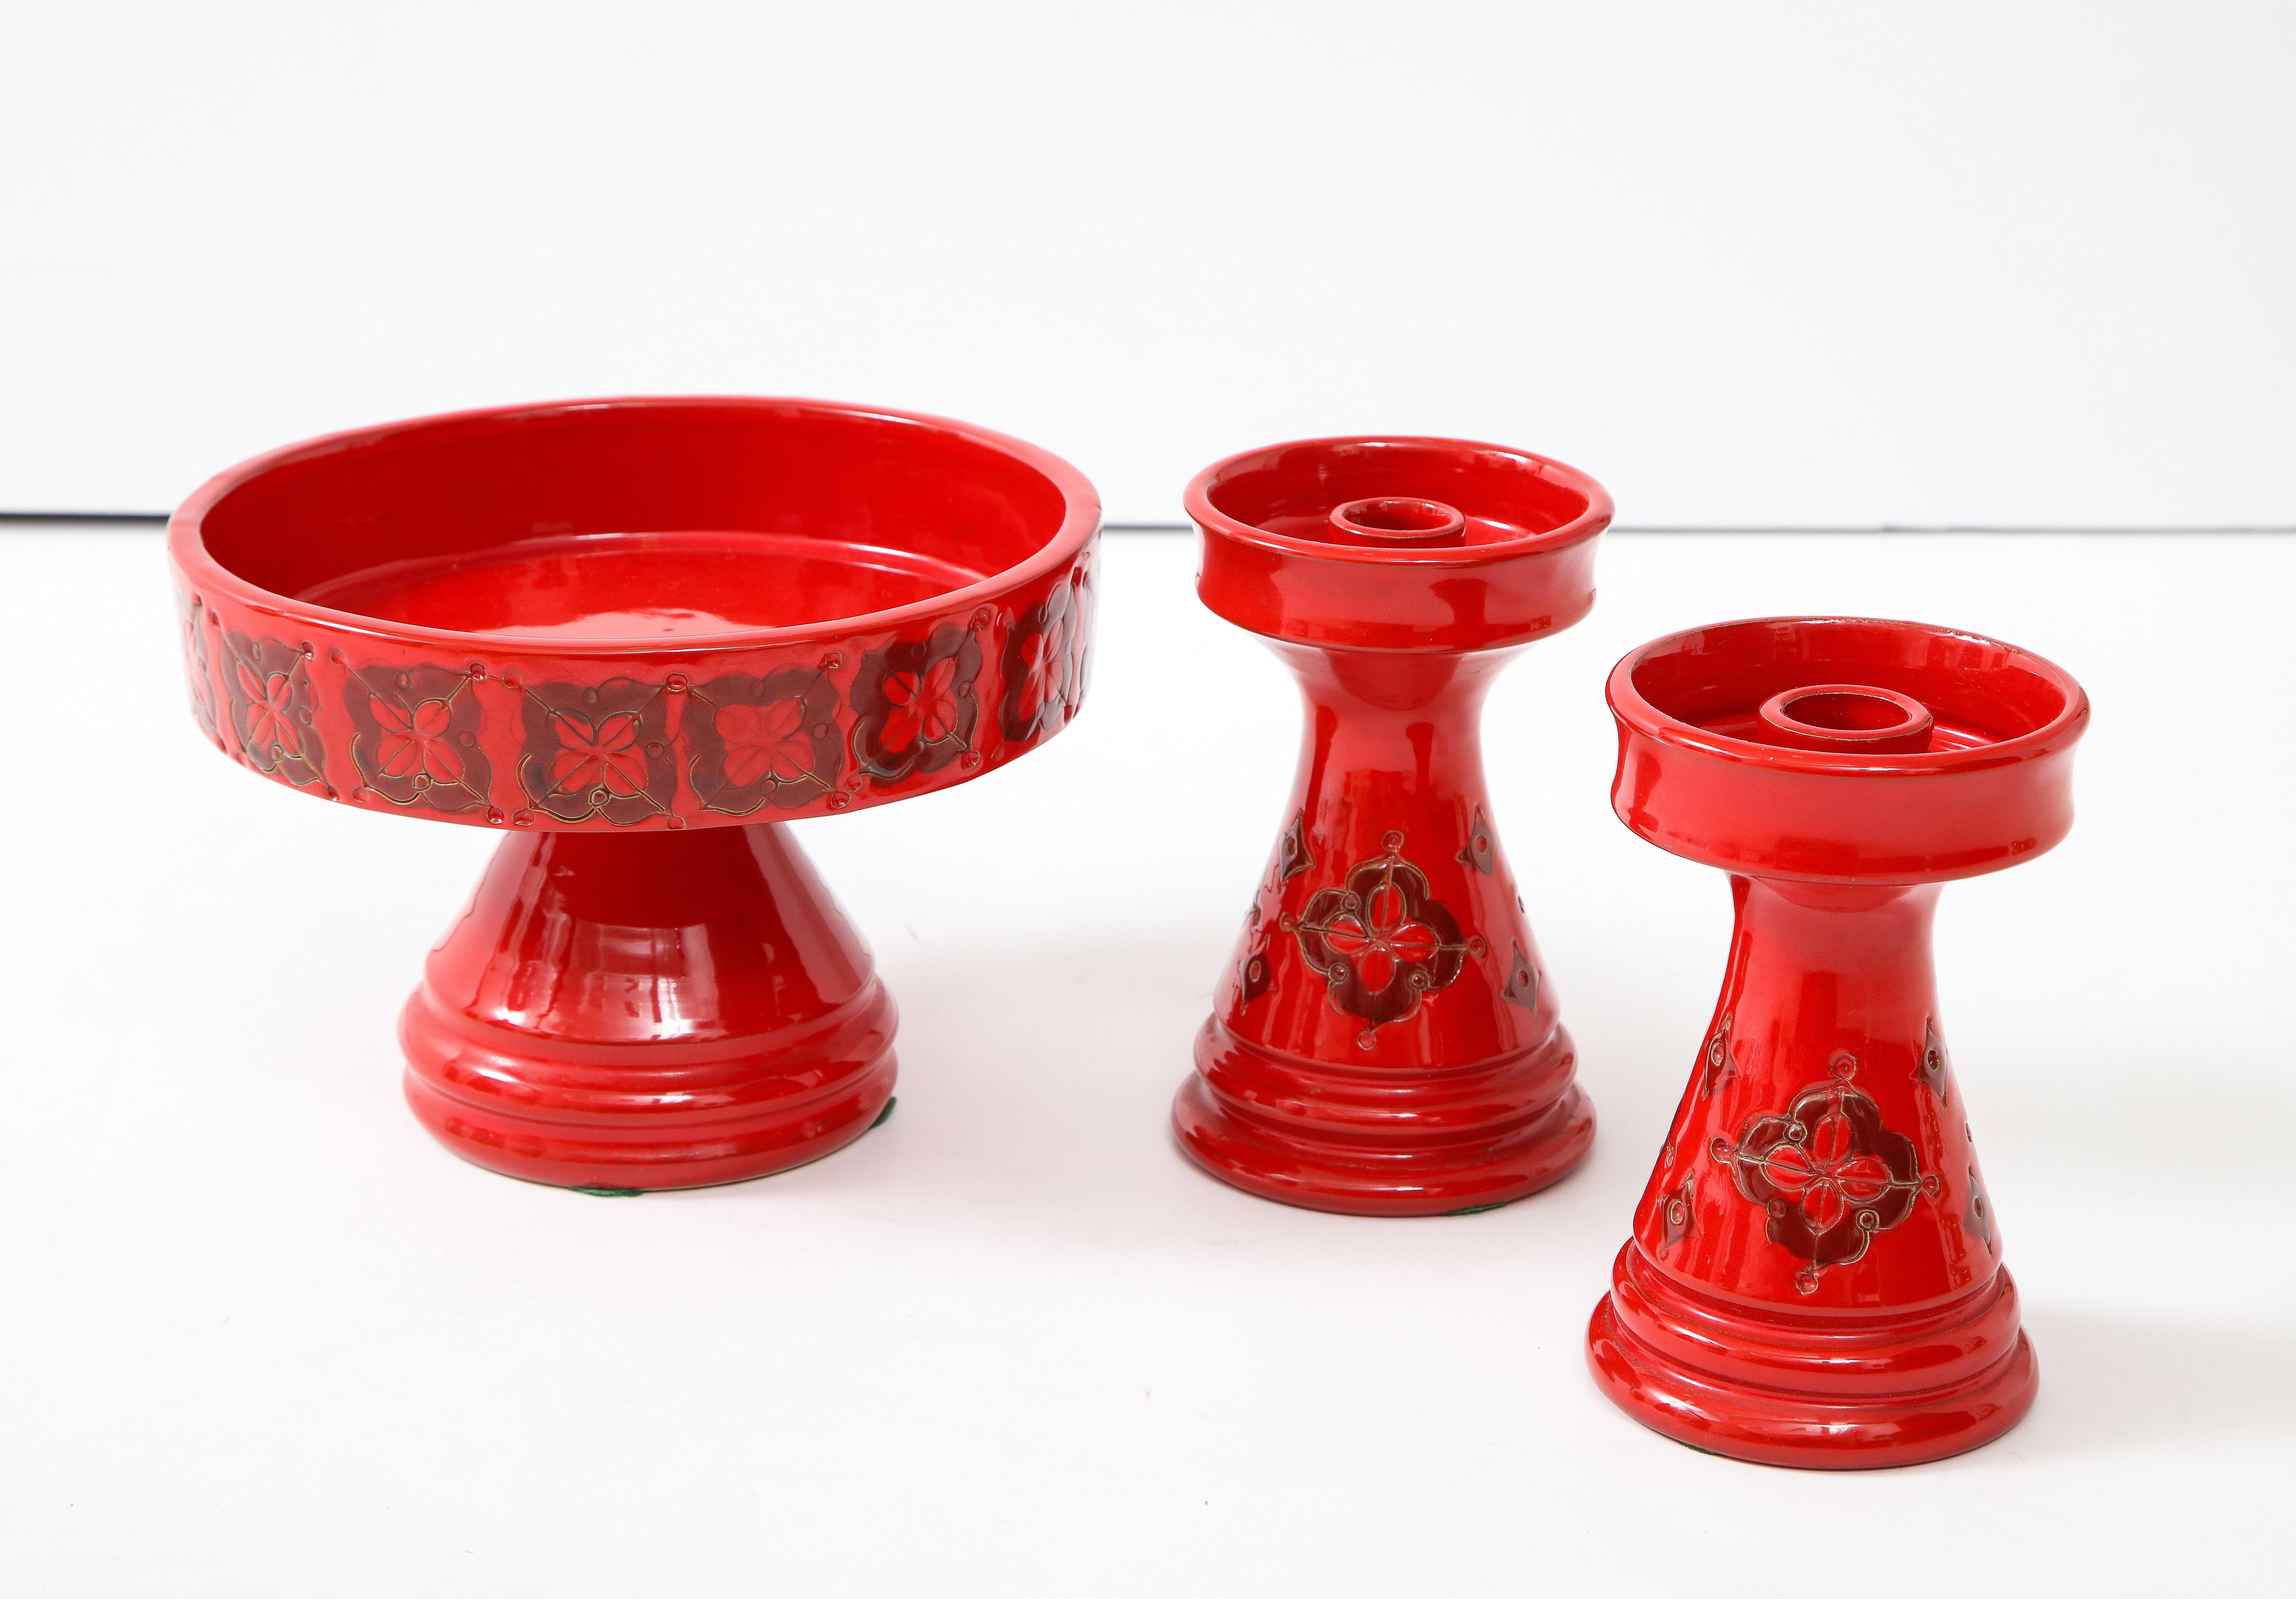 1960er Jahre Mid-Century Modern Italienische Keramik Kerzenhalter und dekorative Schale von Rosenthal Netter.

Maße der Schale: Breite 8